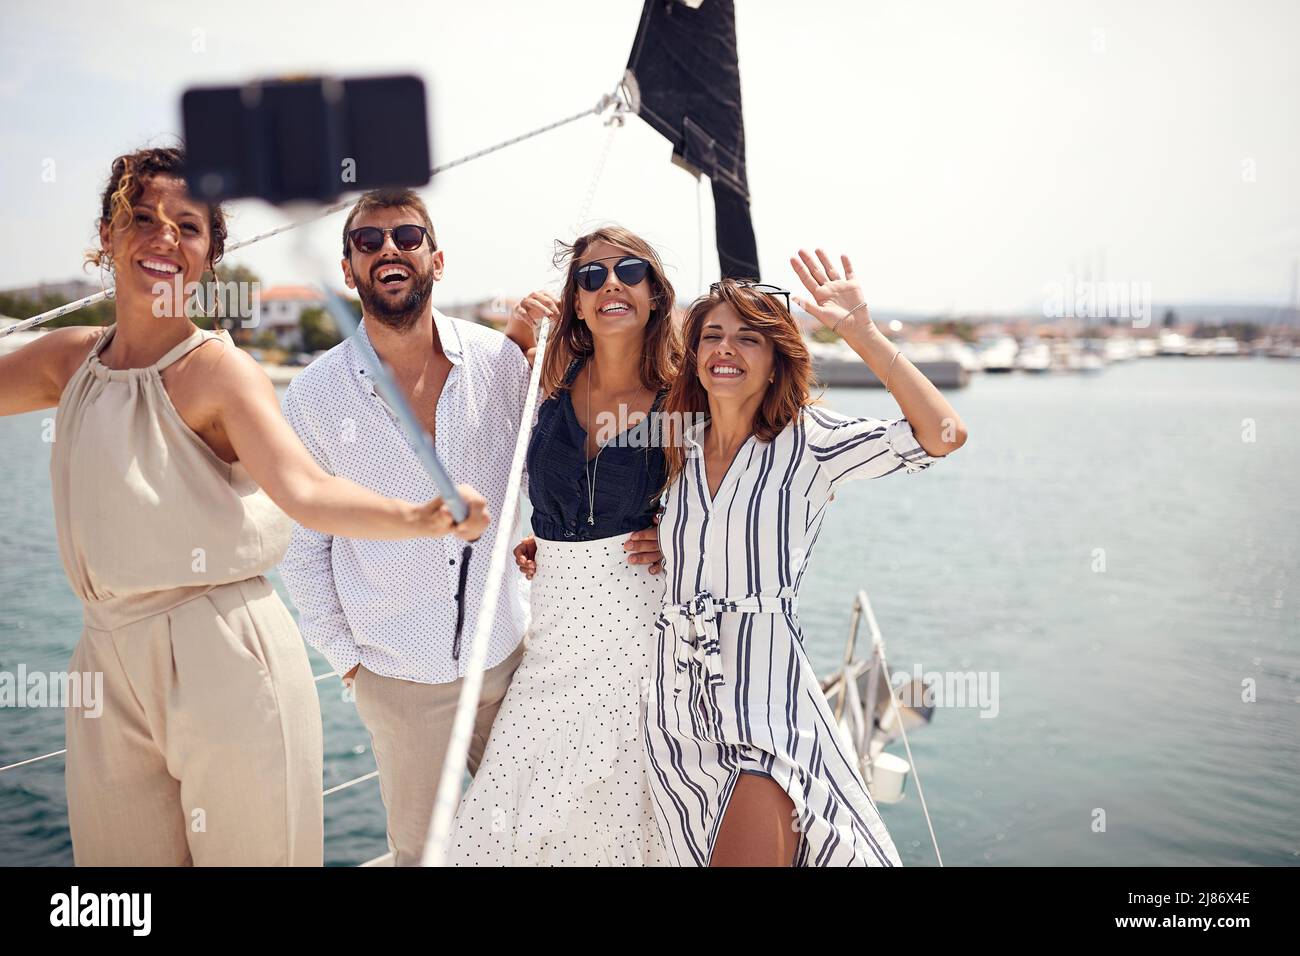 Un gruppo di giovani modelli belli sta prendendo un selfie sul ponte dello yacht in una bella giornata estiva sul mare. Estate, mare, vacanza, amicizia Foto Stock